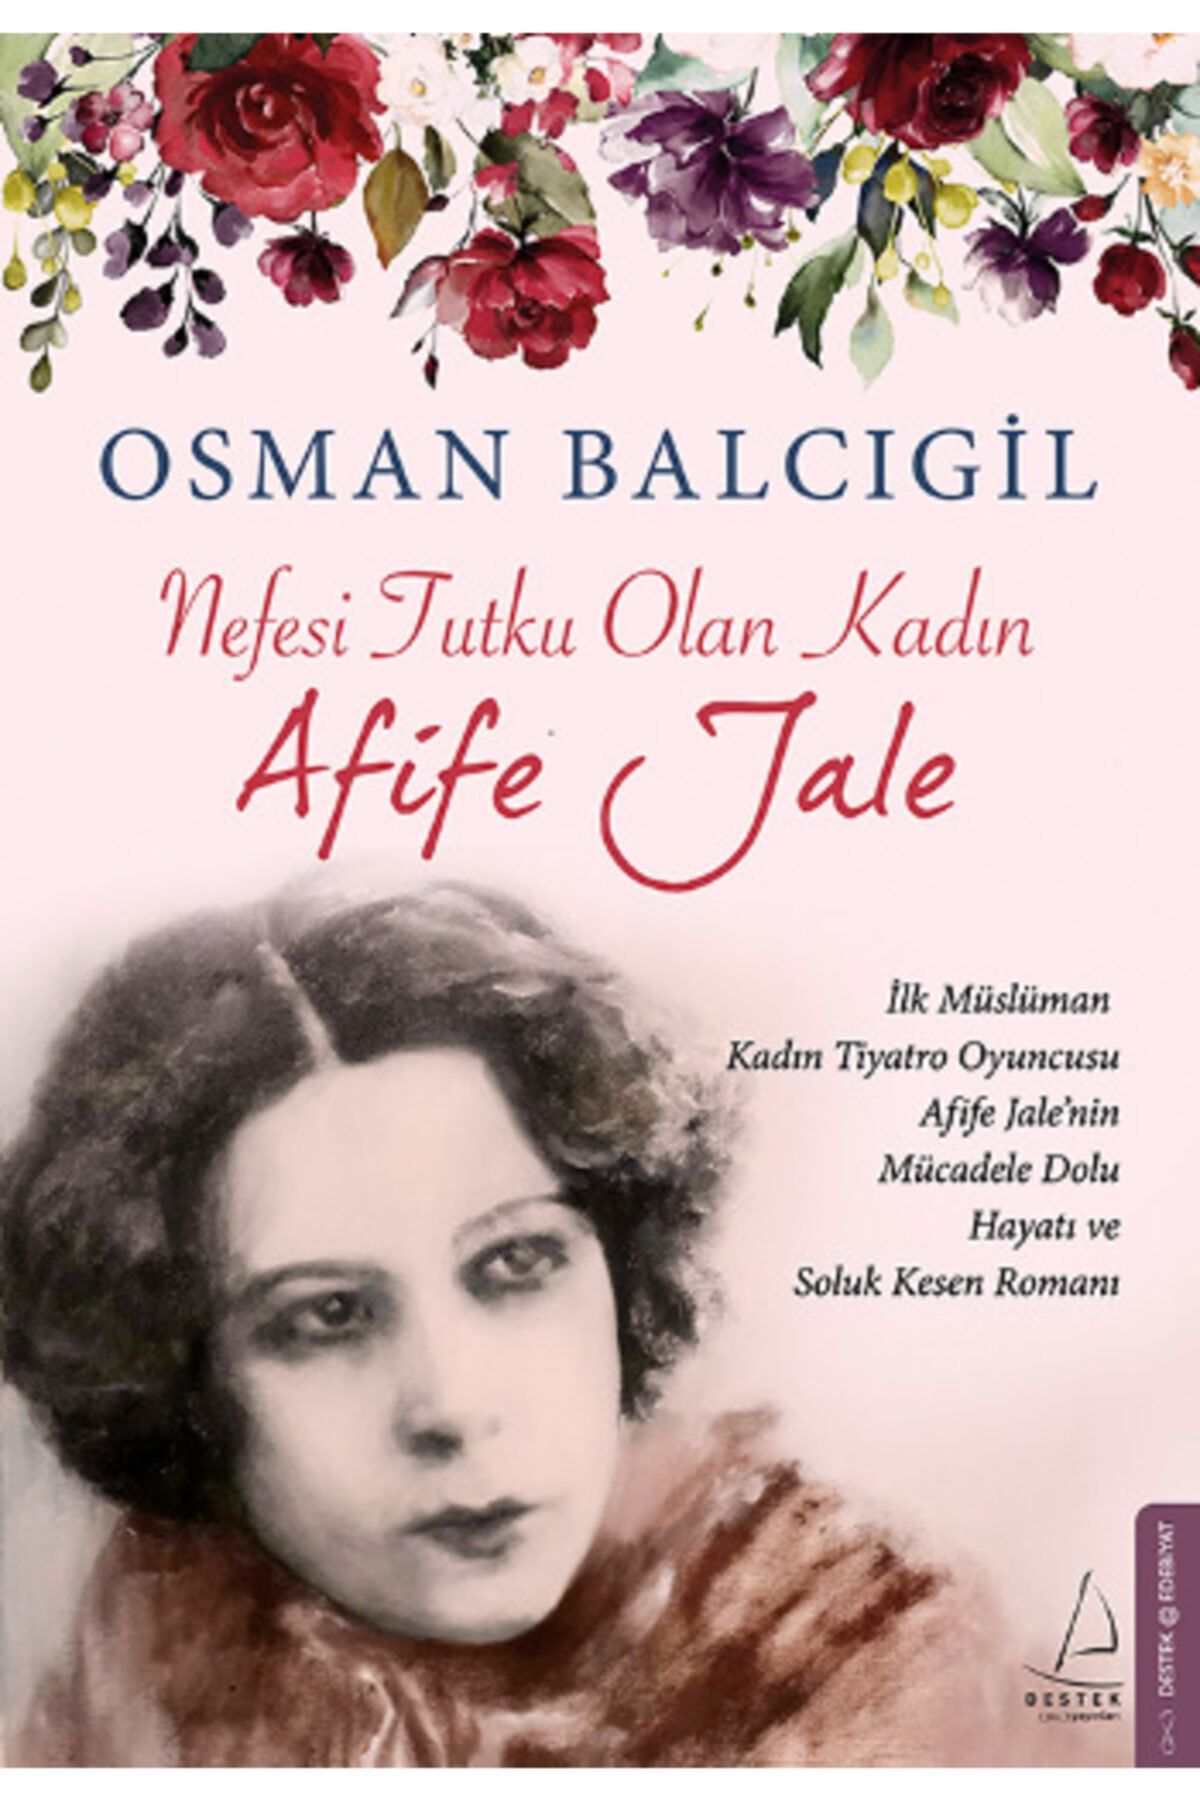 Destek Yayınları Nefesi Tutku Olan Kadın Afife Jale / Osman Balcıgil /